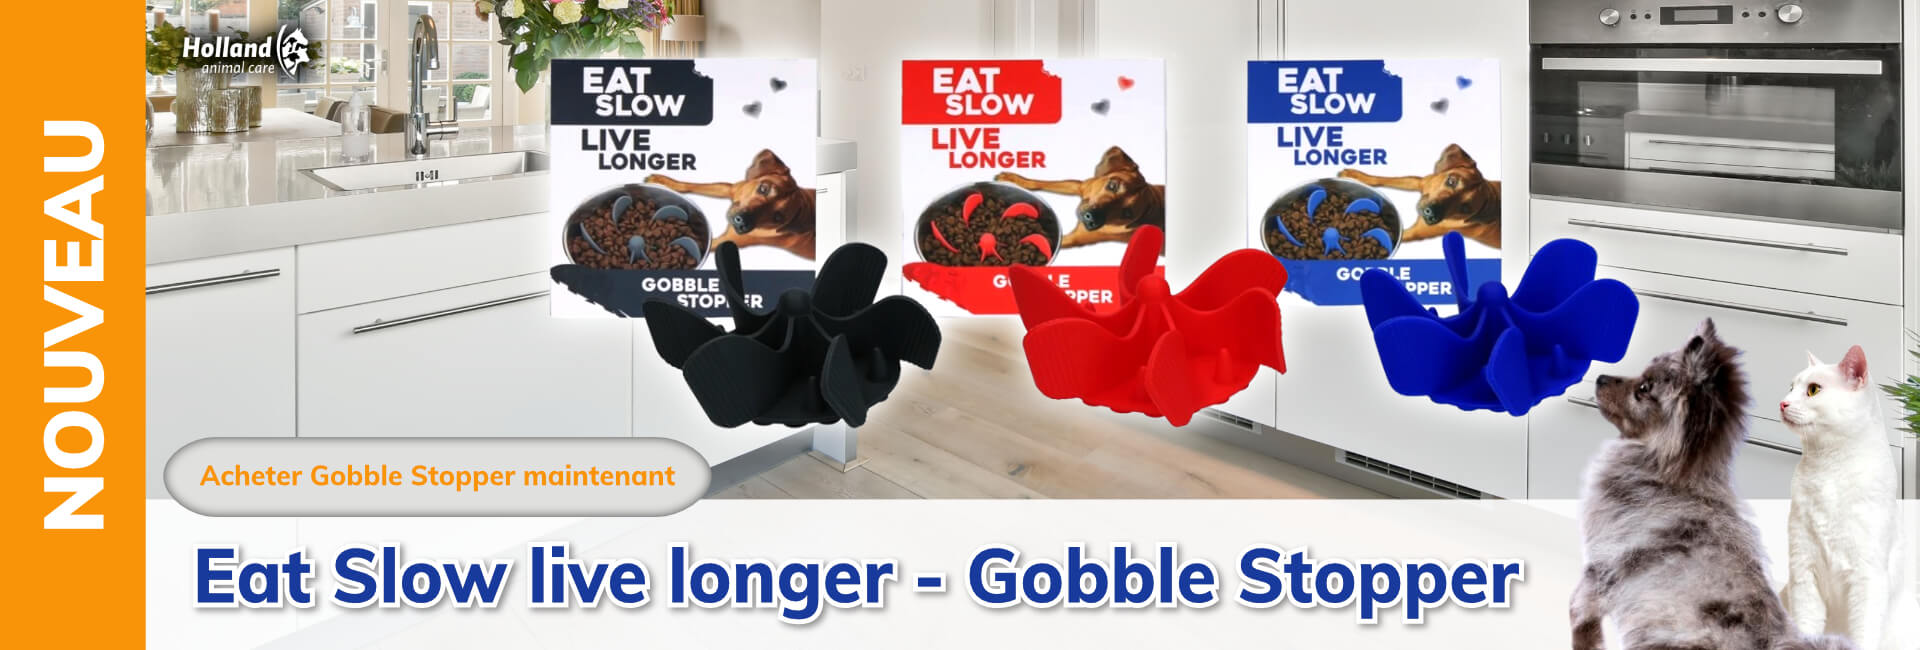 Eat Slow live longer - Gobble Stopper